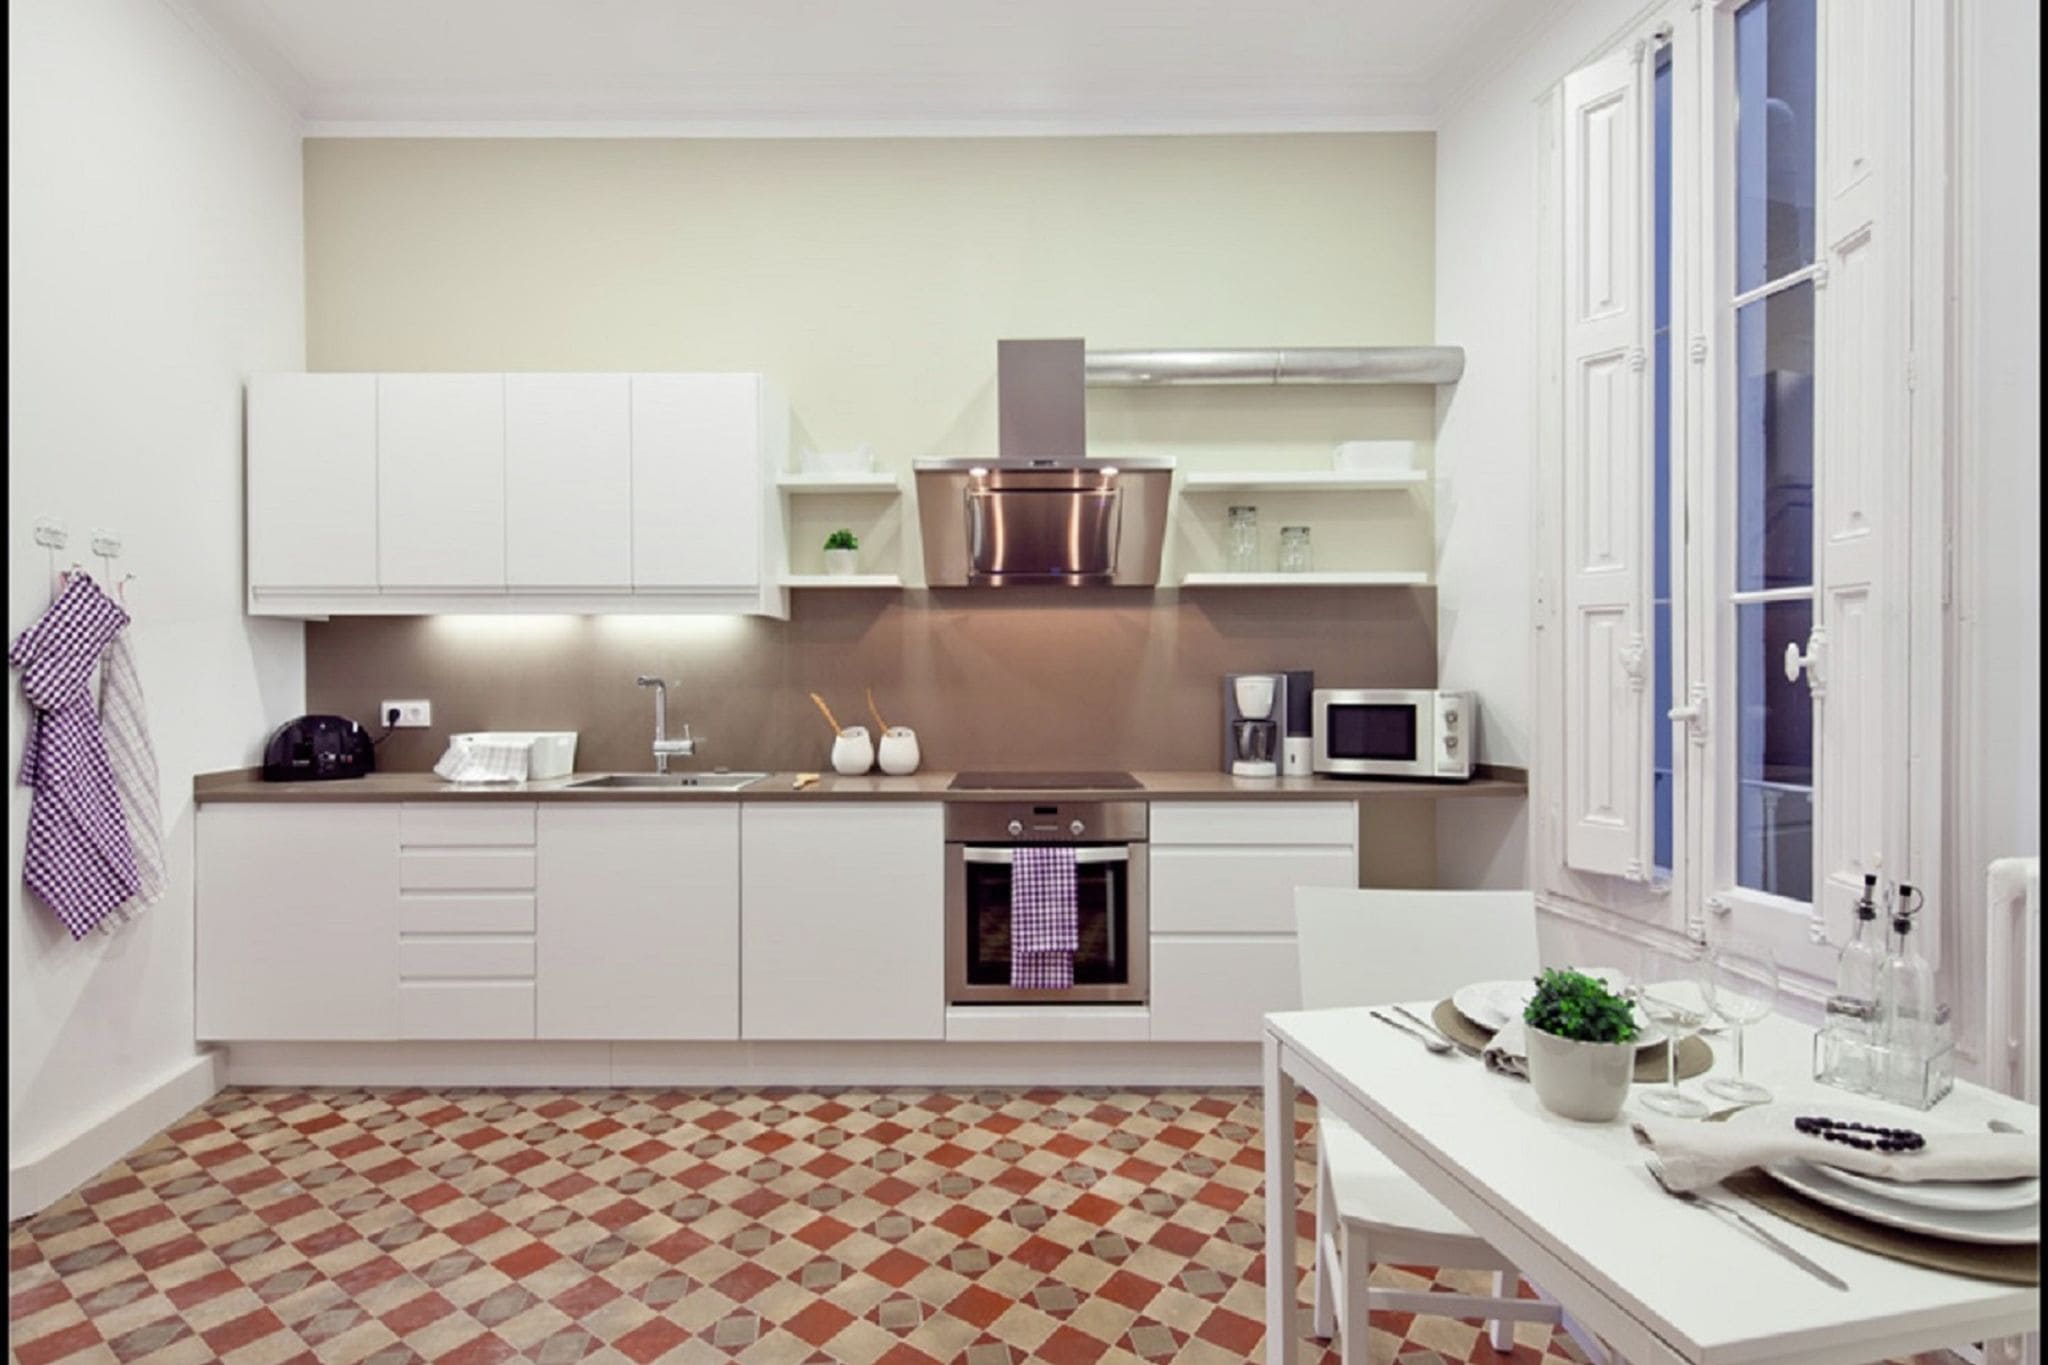 Luxuriöse Wohnung für 5 Personen, kürzlich renoviert im Zentrum von Barcelona